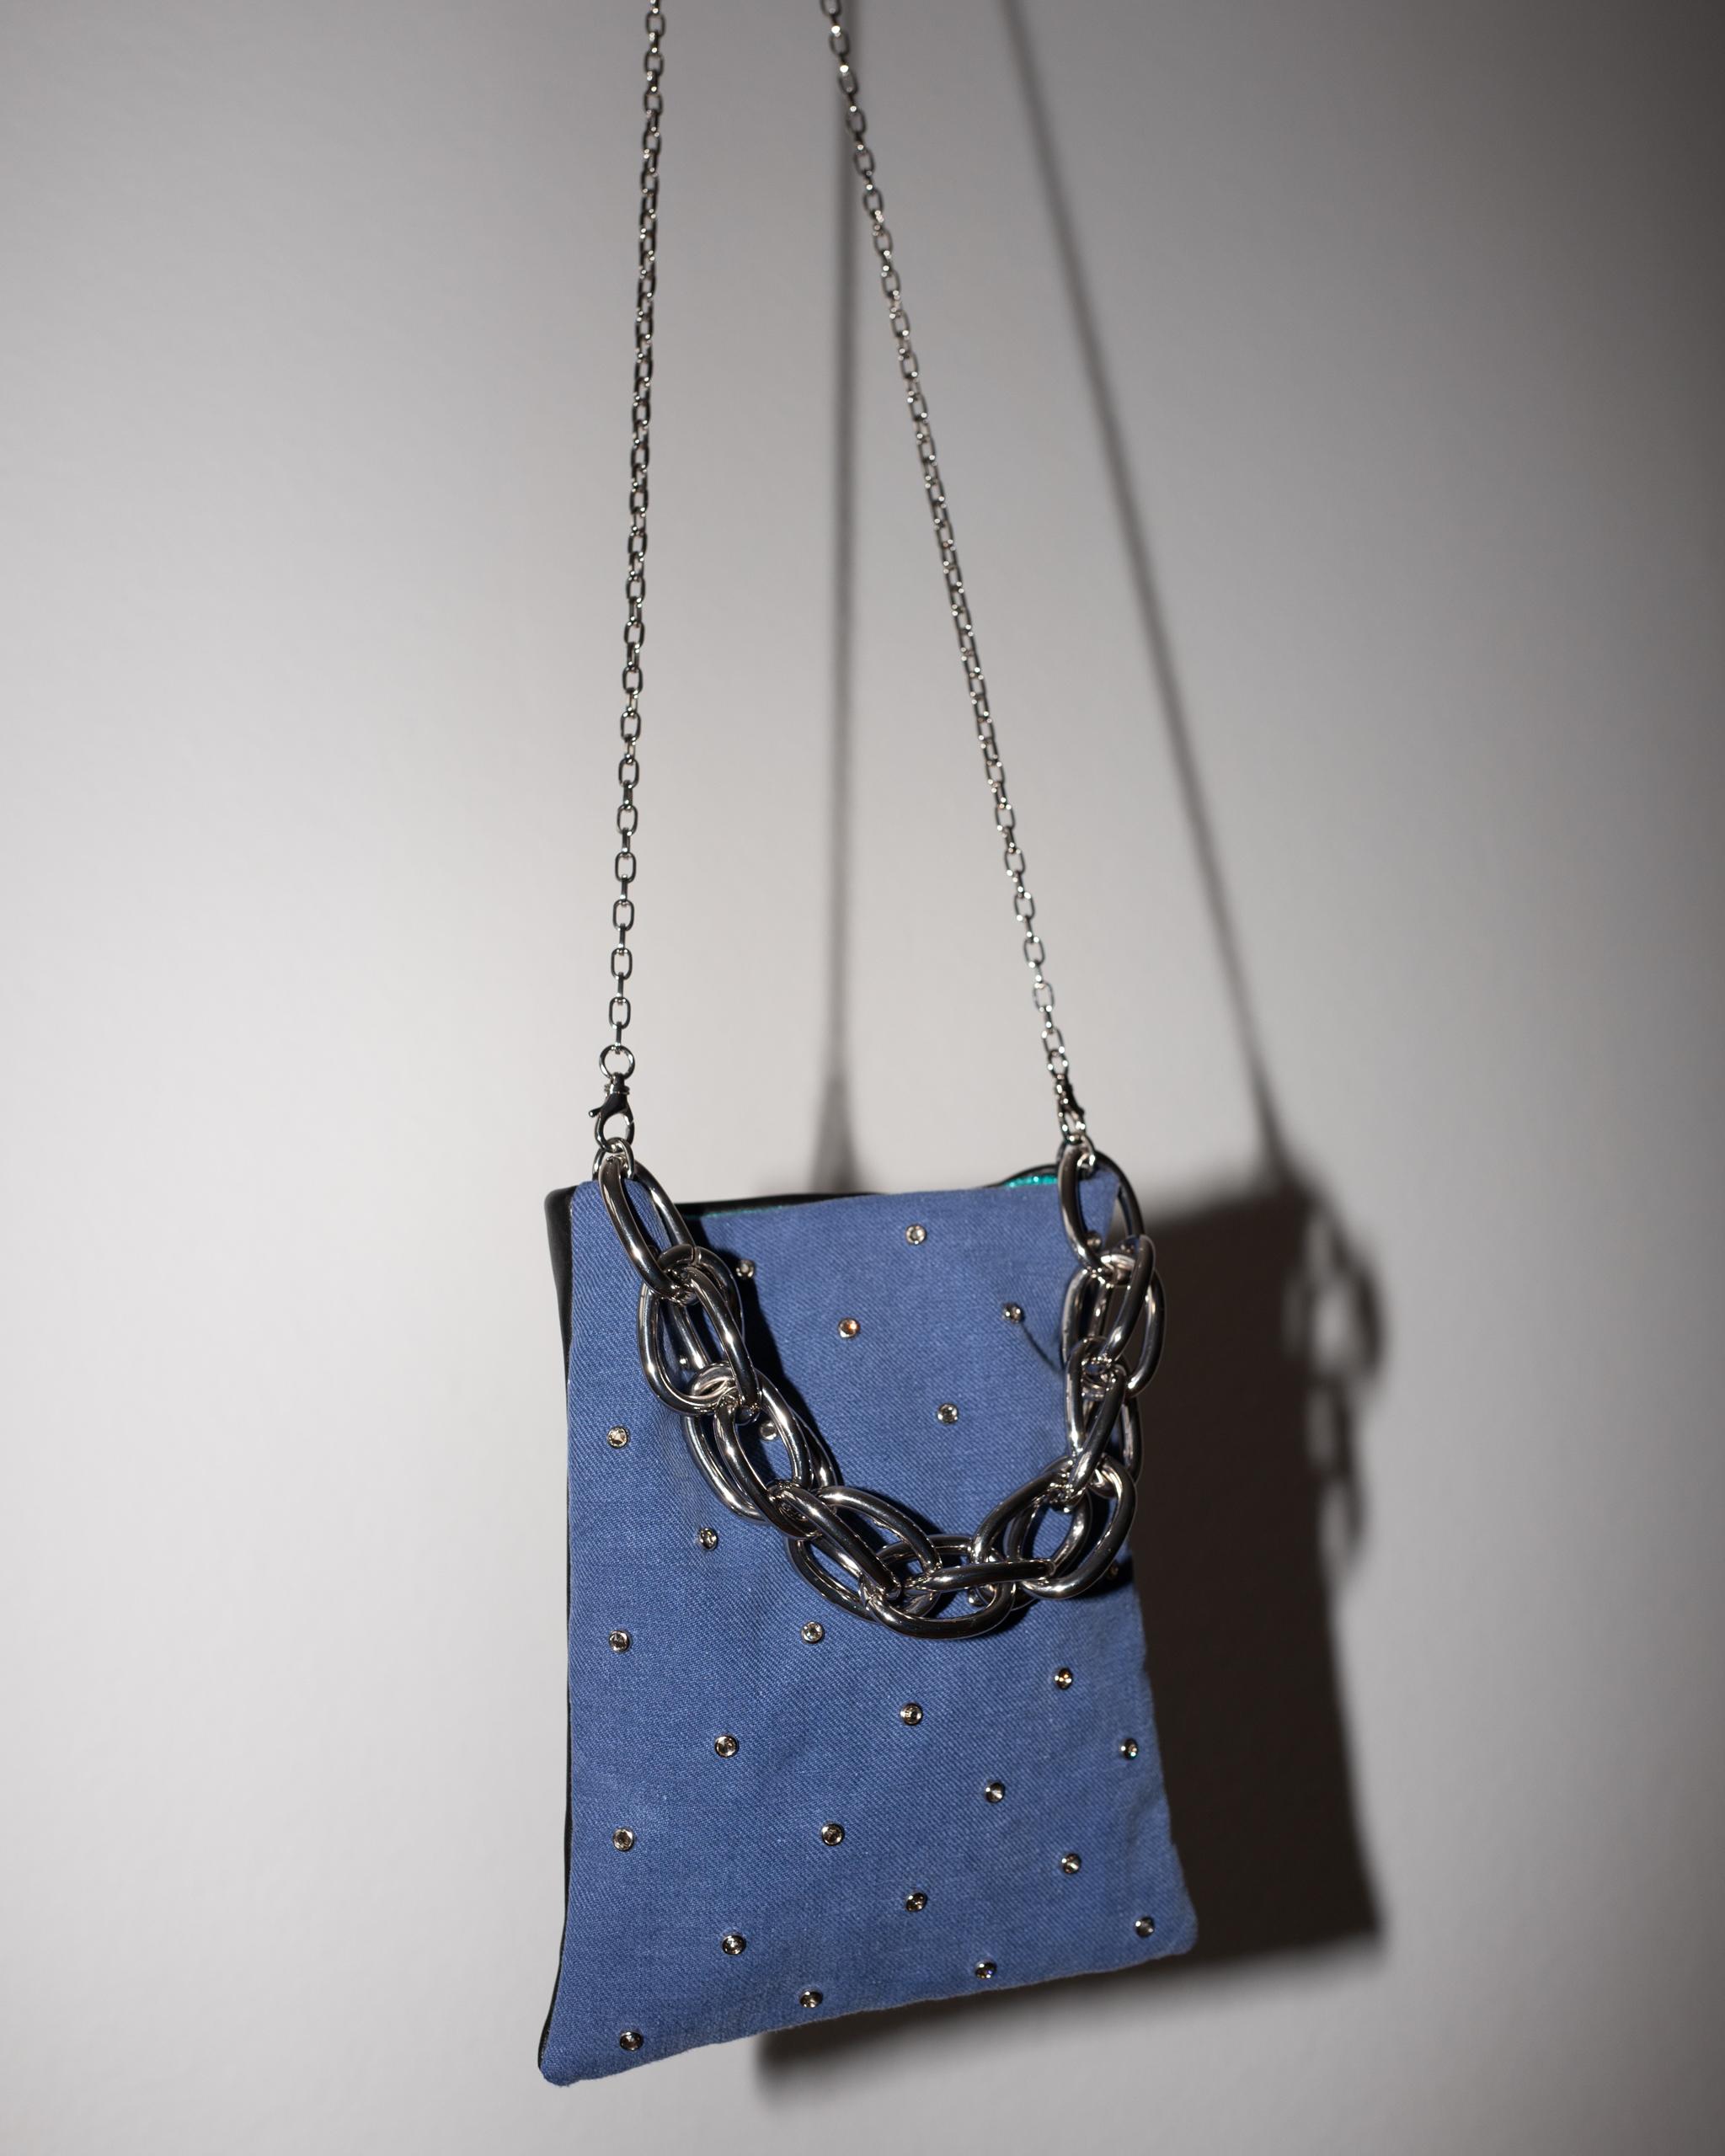 Crystal Embellished Blue Evening Shoulder Bag Black Leather Chunky Chain For Sale 3